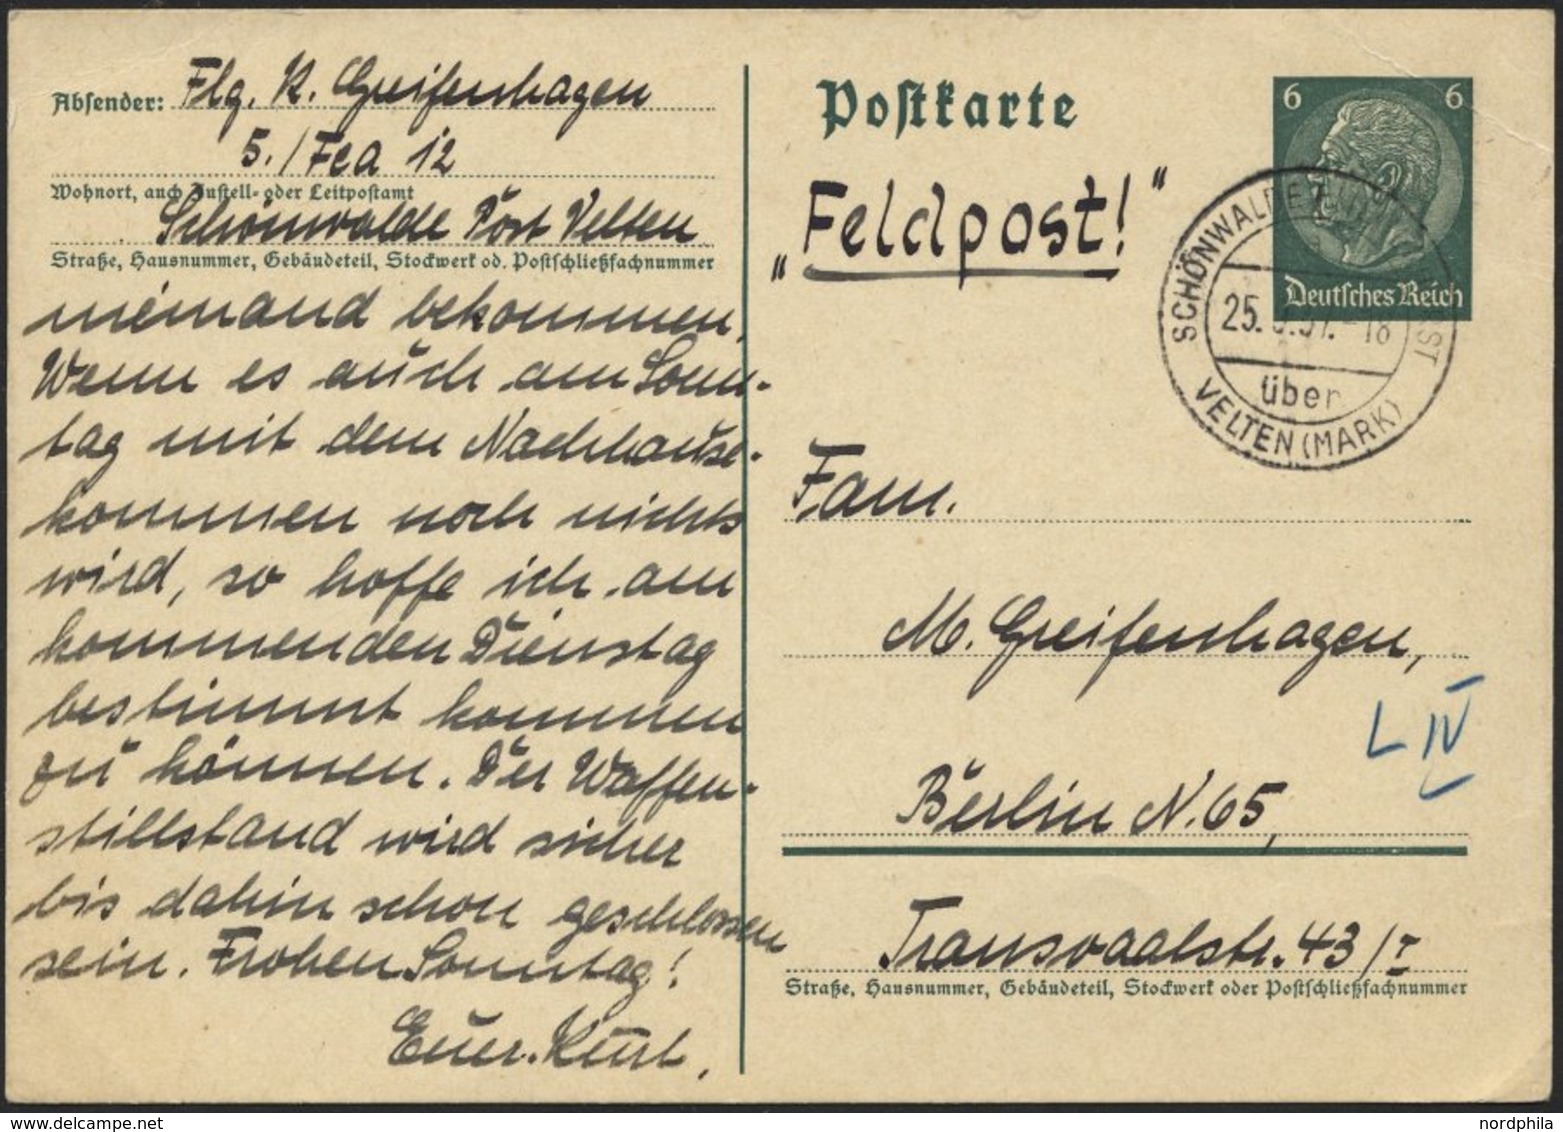 FELDPOST II. WK BELEGE P 226 BRIEF, 1937, 6 Pf. Graugrün Ganzsachen-Manöverkarte Mit Absender Flieger 5/Fea 12/Schönwald - Besetzungen 1938-45